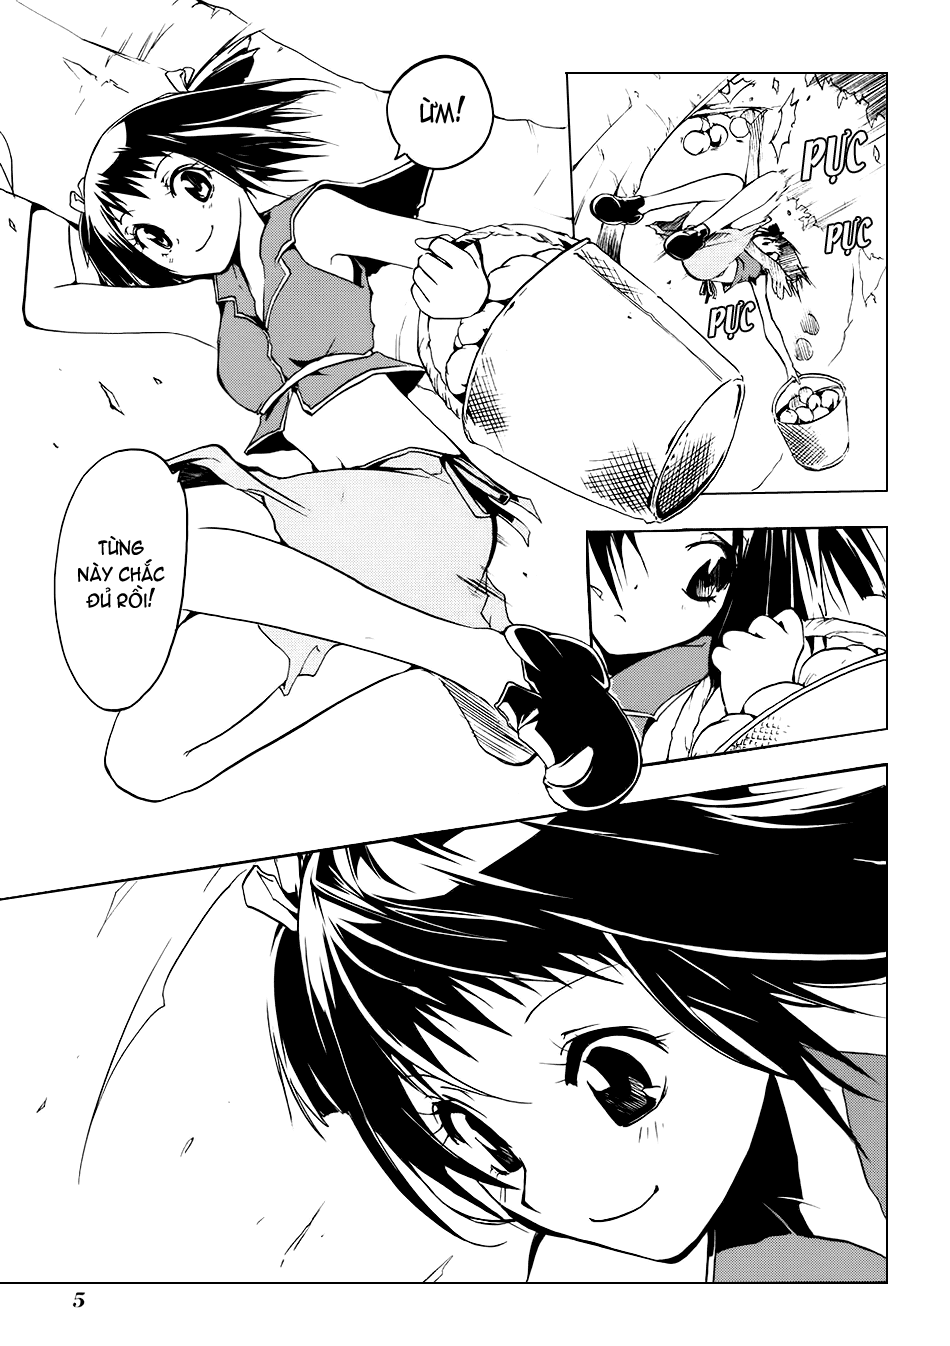 [Manga]: Esprit 0005